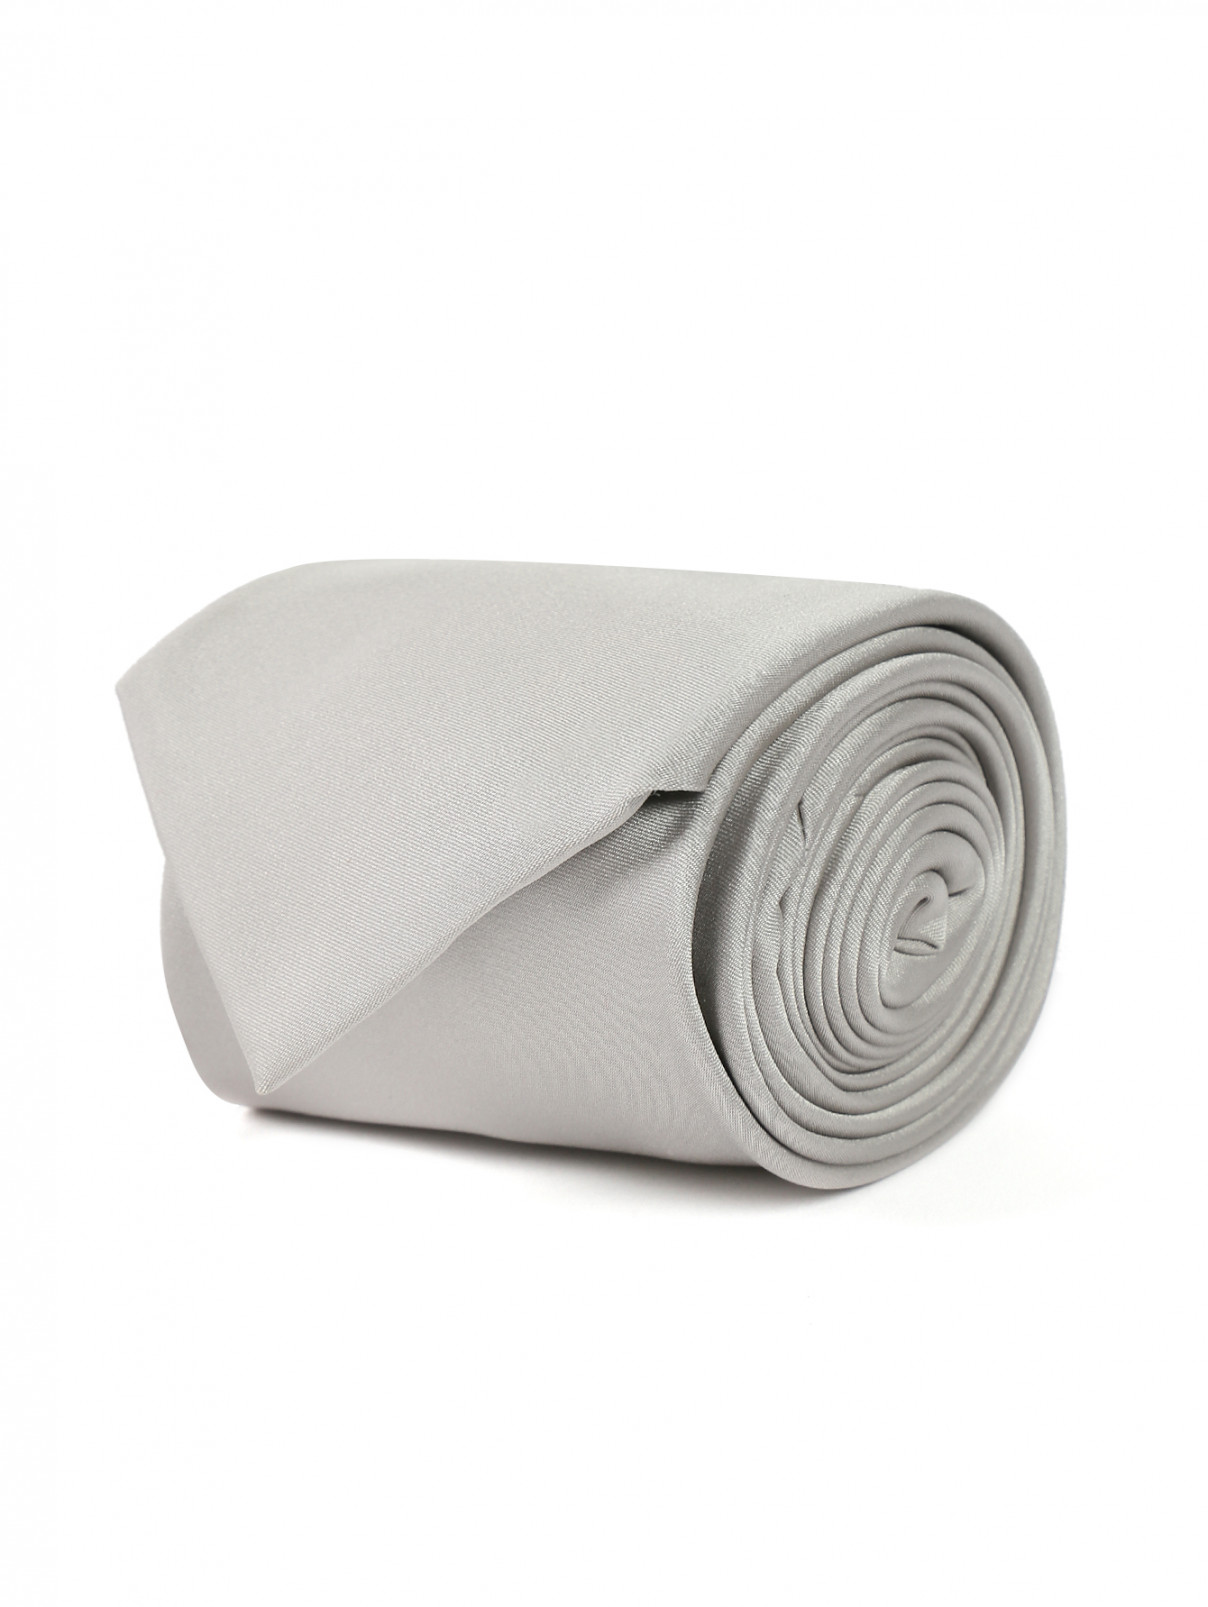 Однотонный галстук из шелка Pal Zileri  –  Общий вид  – Цвет:  Серый